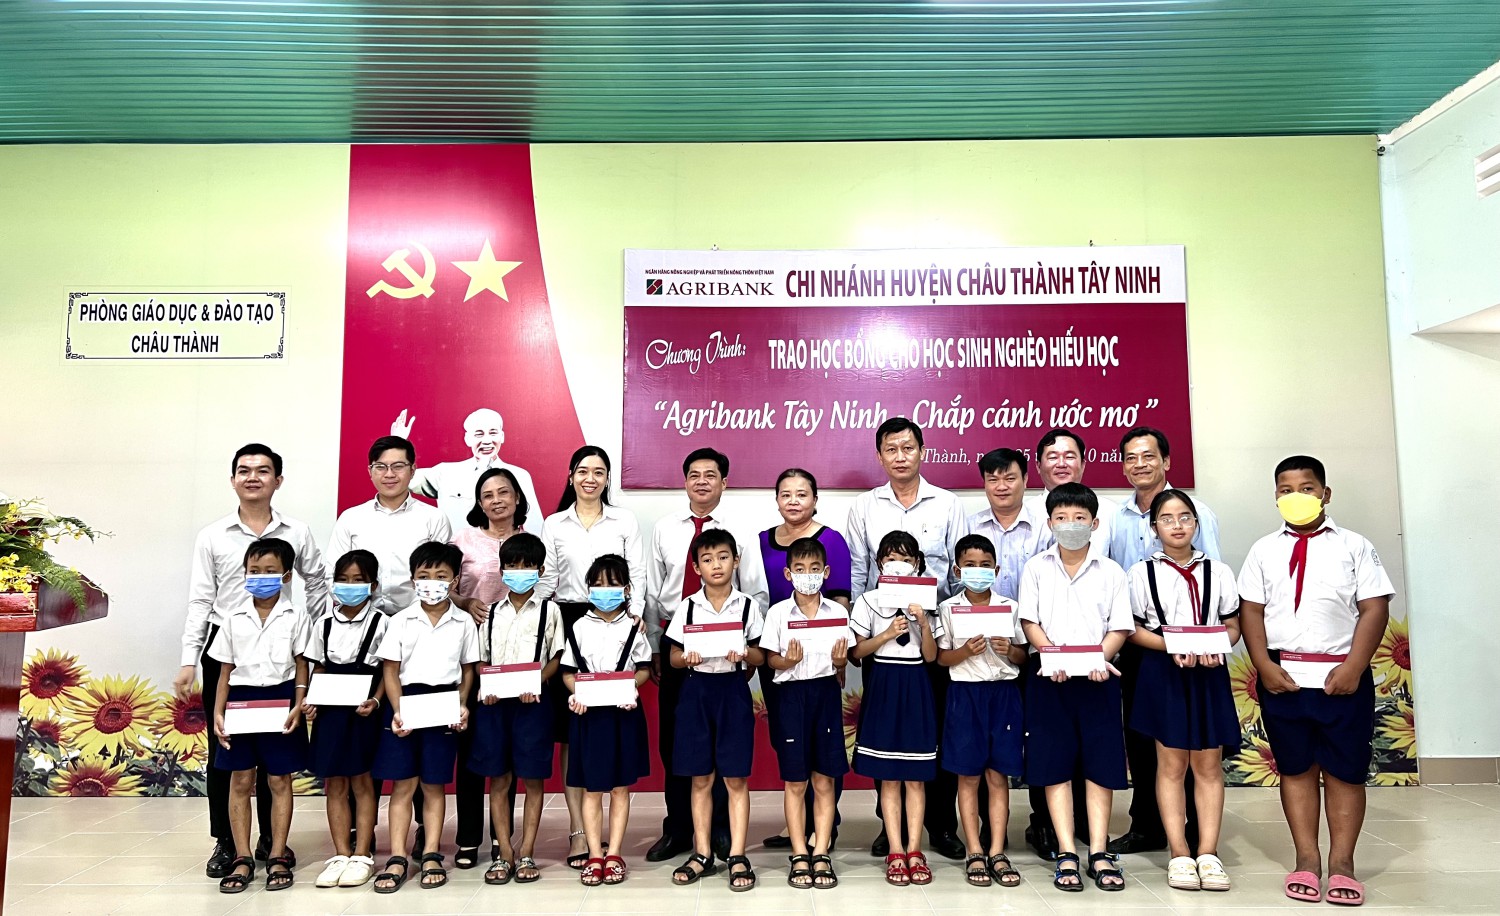 Agribank chi nhánh huyện Châu Thành, Tây Ninh: Trao học bổng chấp cánh ước mơ cho các em học sinh nghèo hiếu học